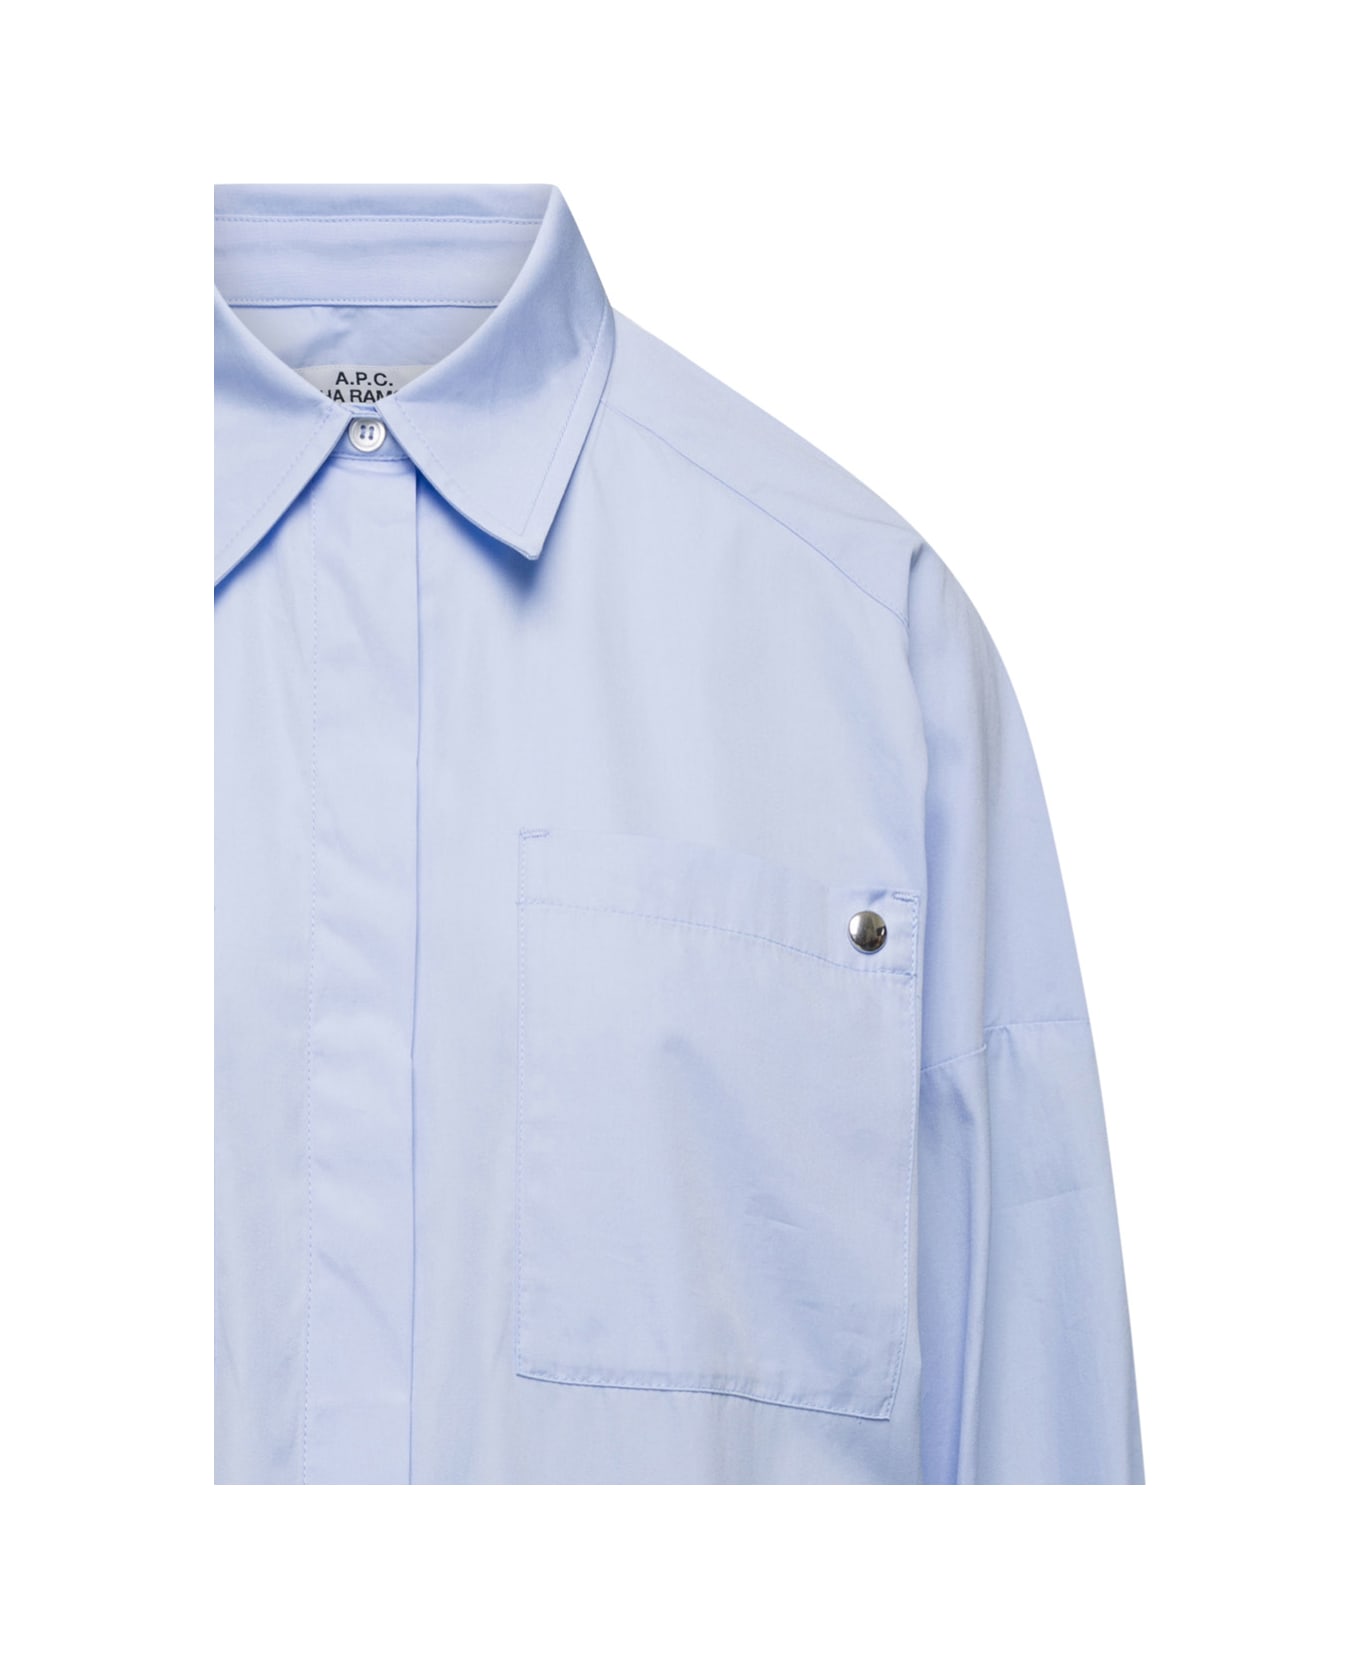 A.P.C. Maxi Shirt - Blu シャツ